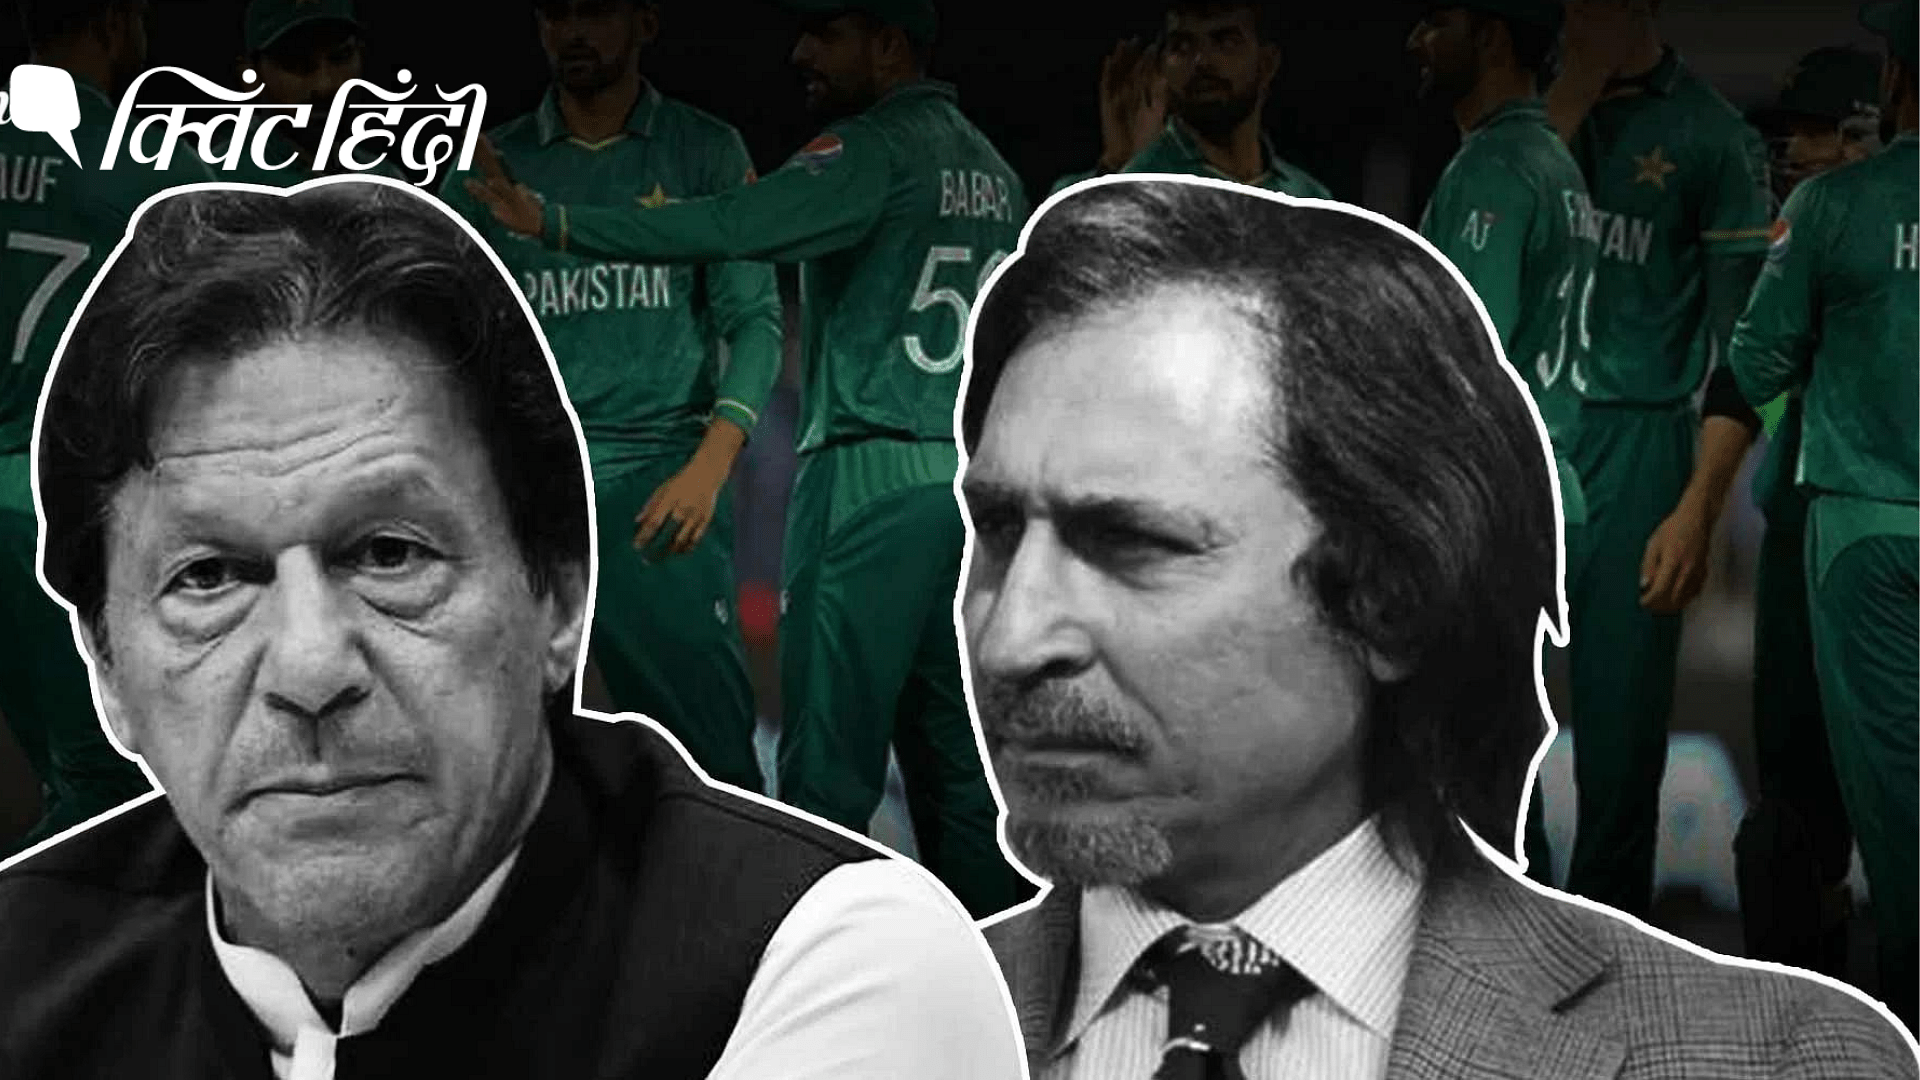 <div class="paragraphs"><p>इमरान खान के सत्ता से बाहर होते ही क्या रमीज राजा पाकिस्तान क्रिकेट बोर्ड से रिटायर हो जाएंगे?</p></div>